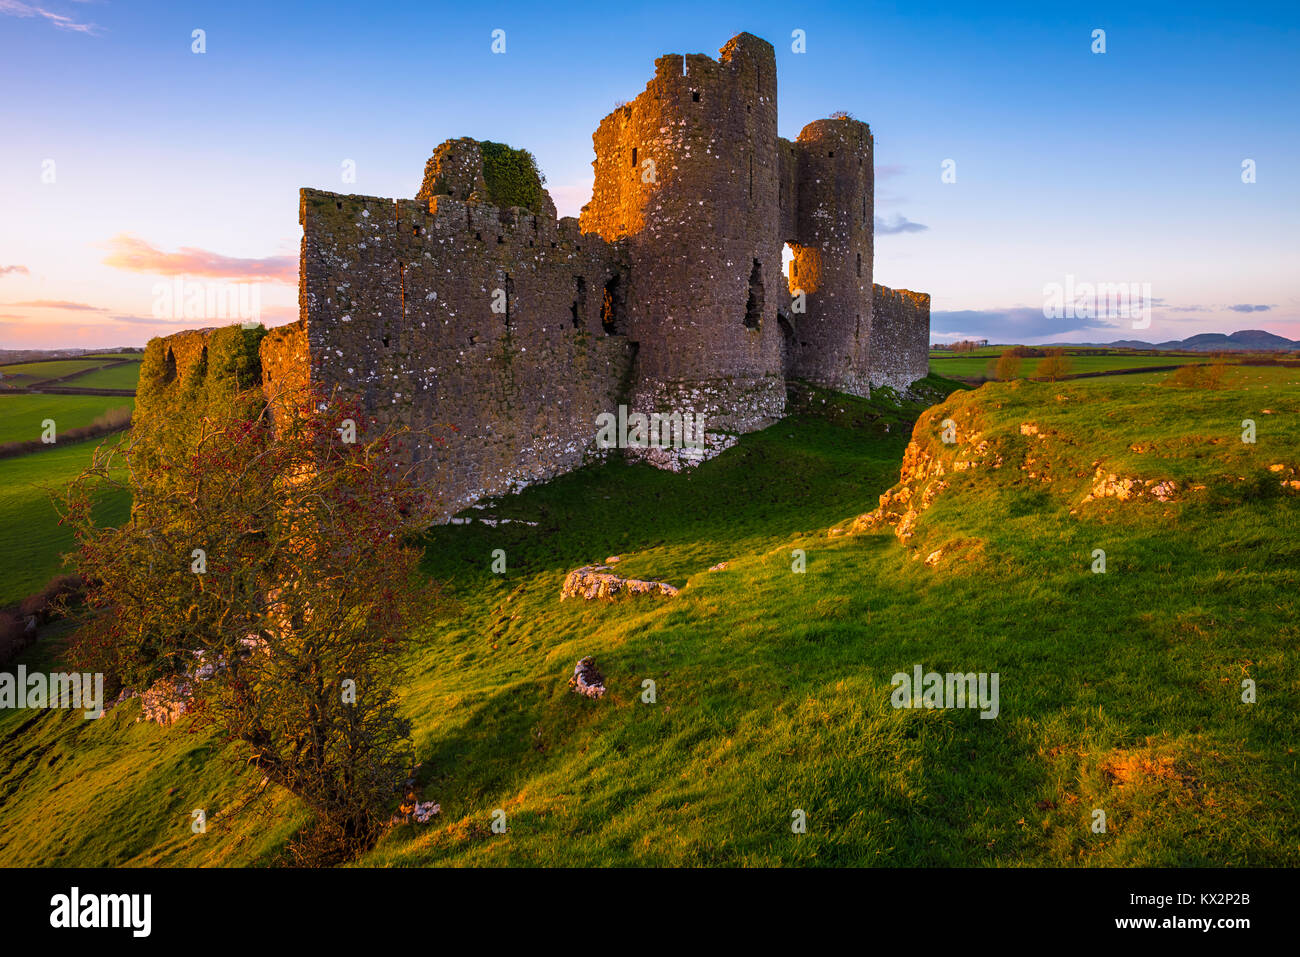 Le rovine del castello di Roche, nella contea di Louth in Irlanda Foto Stock